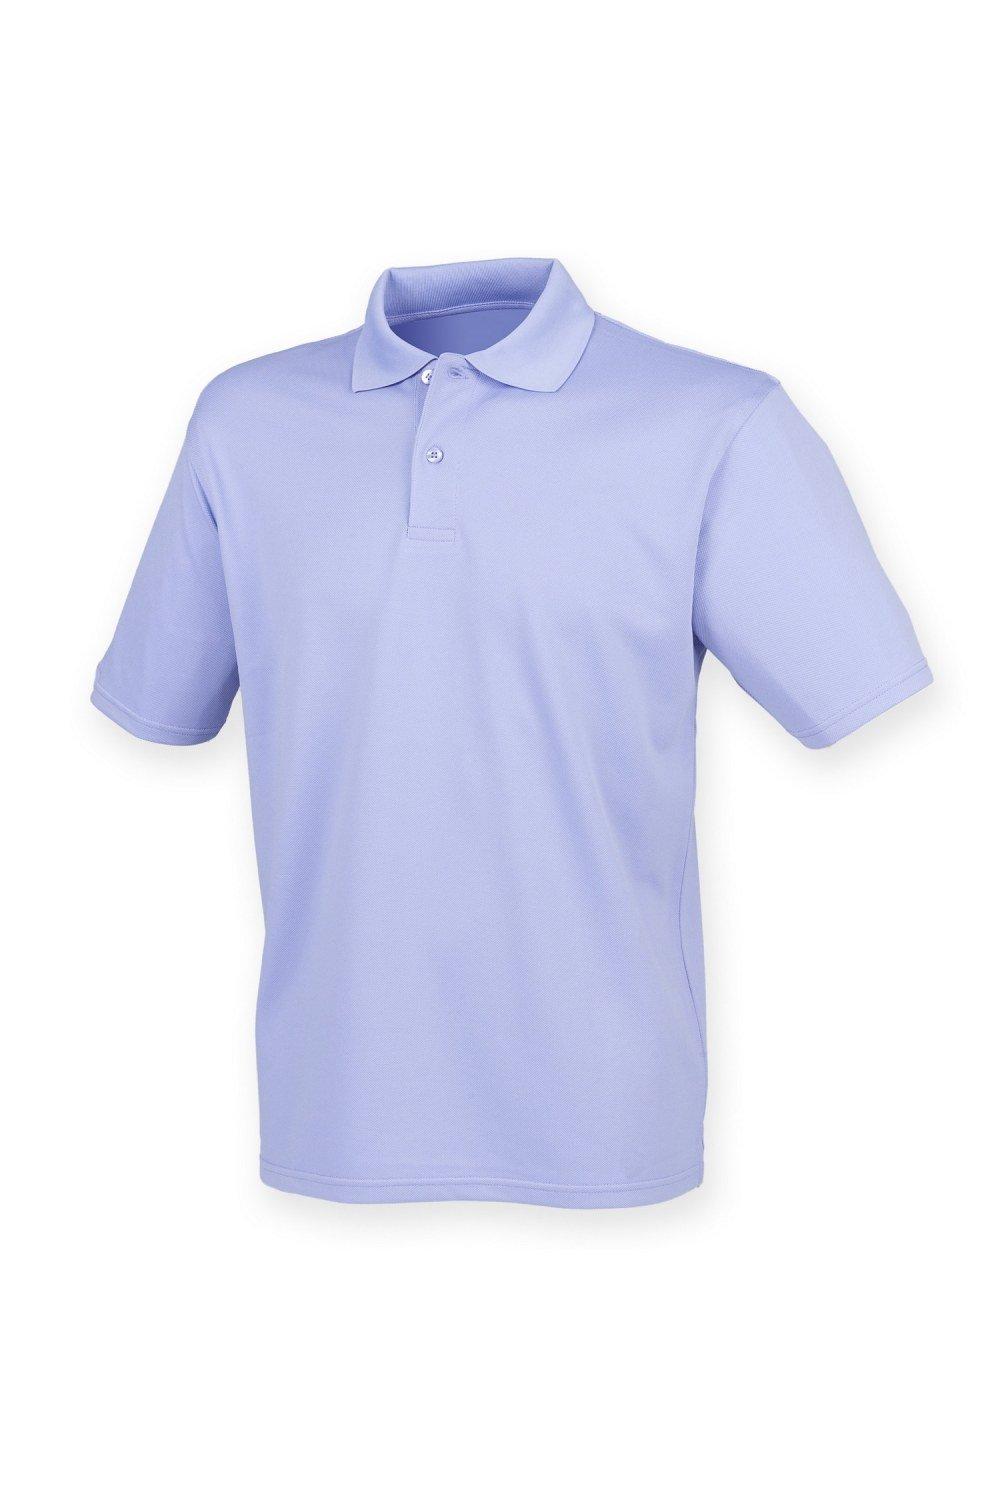 Рубашка поло Coolplus из пике Henbury, фиолетовый рубашка поло coolplus из пике henbury черный